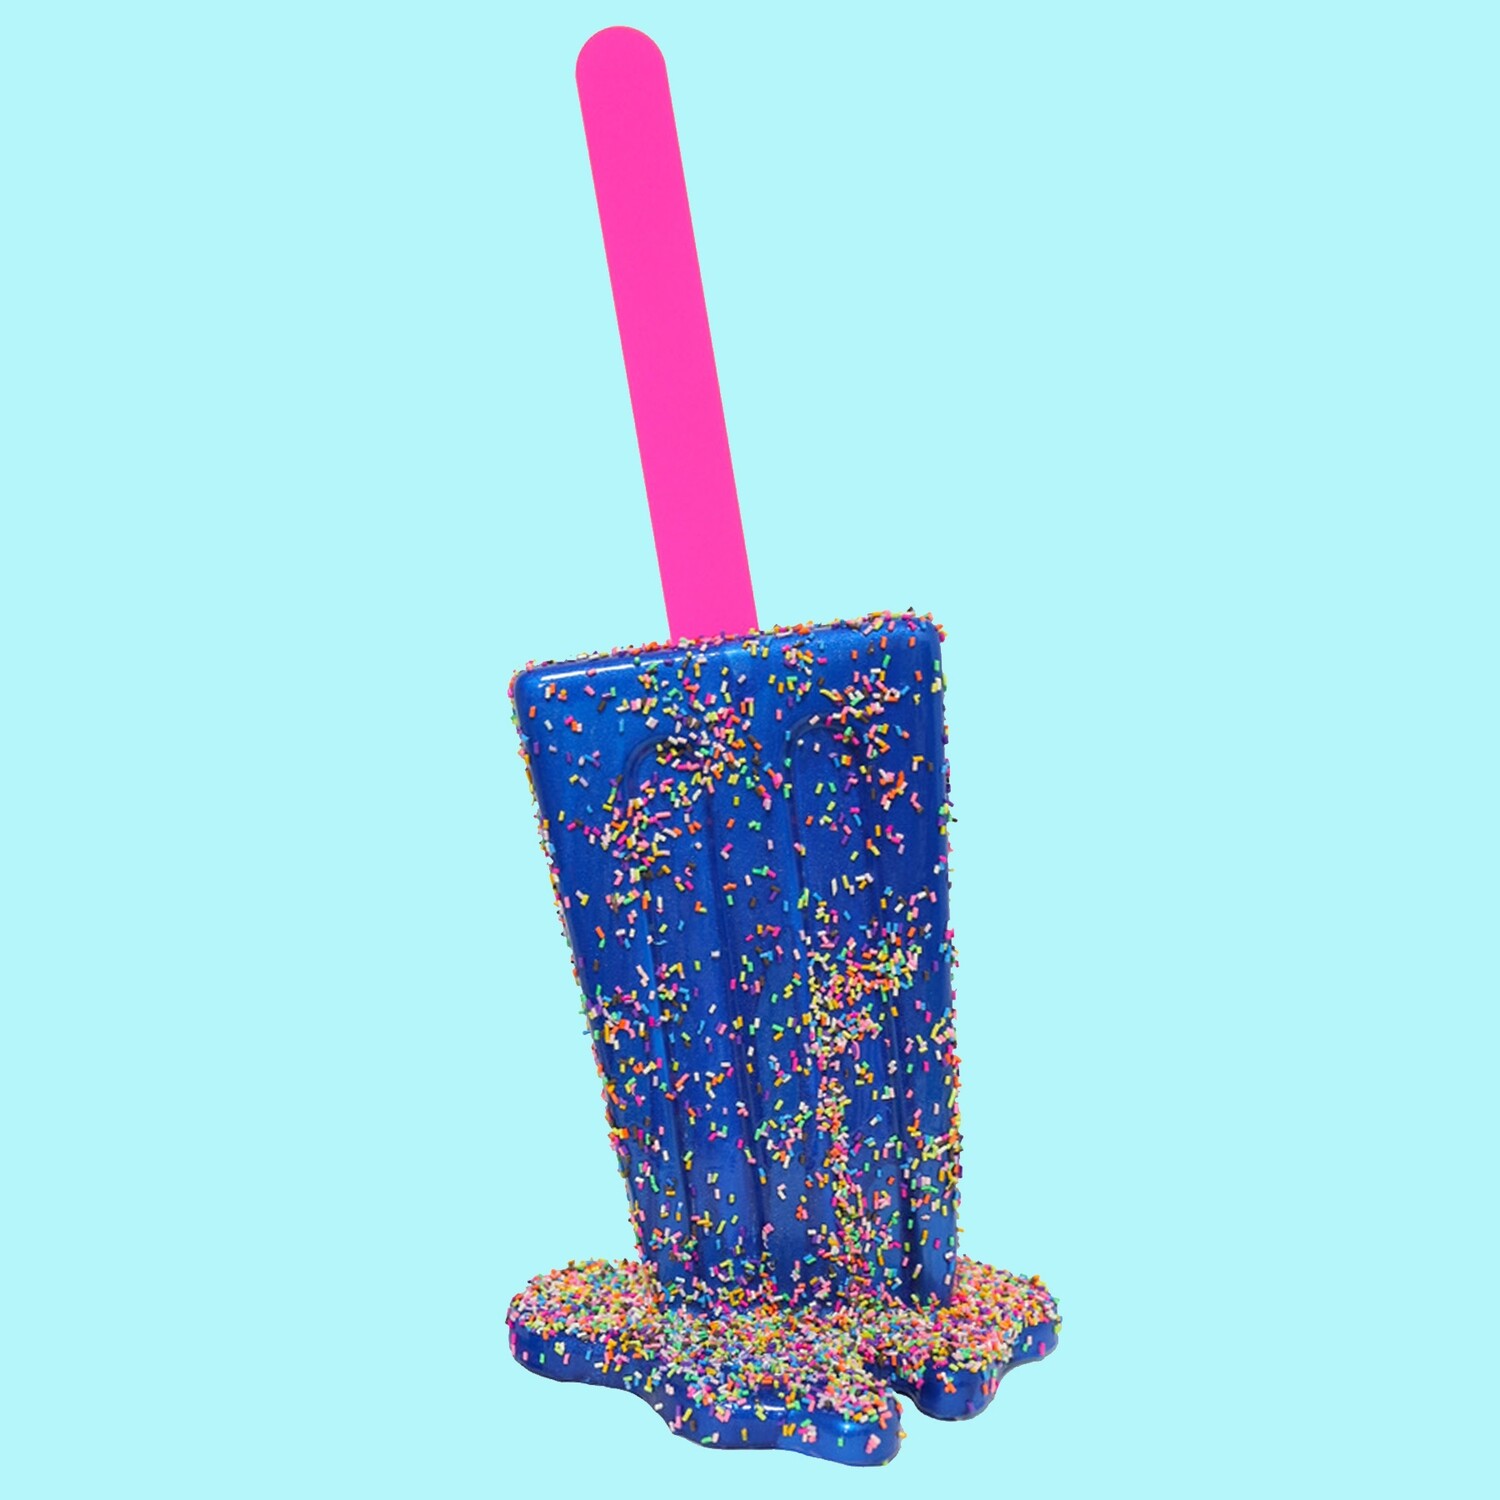 Melting Popsicle Art - True Blue Sprinkle Pop 20" - Original Melting Pops